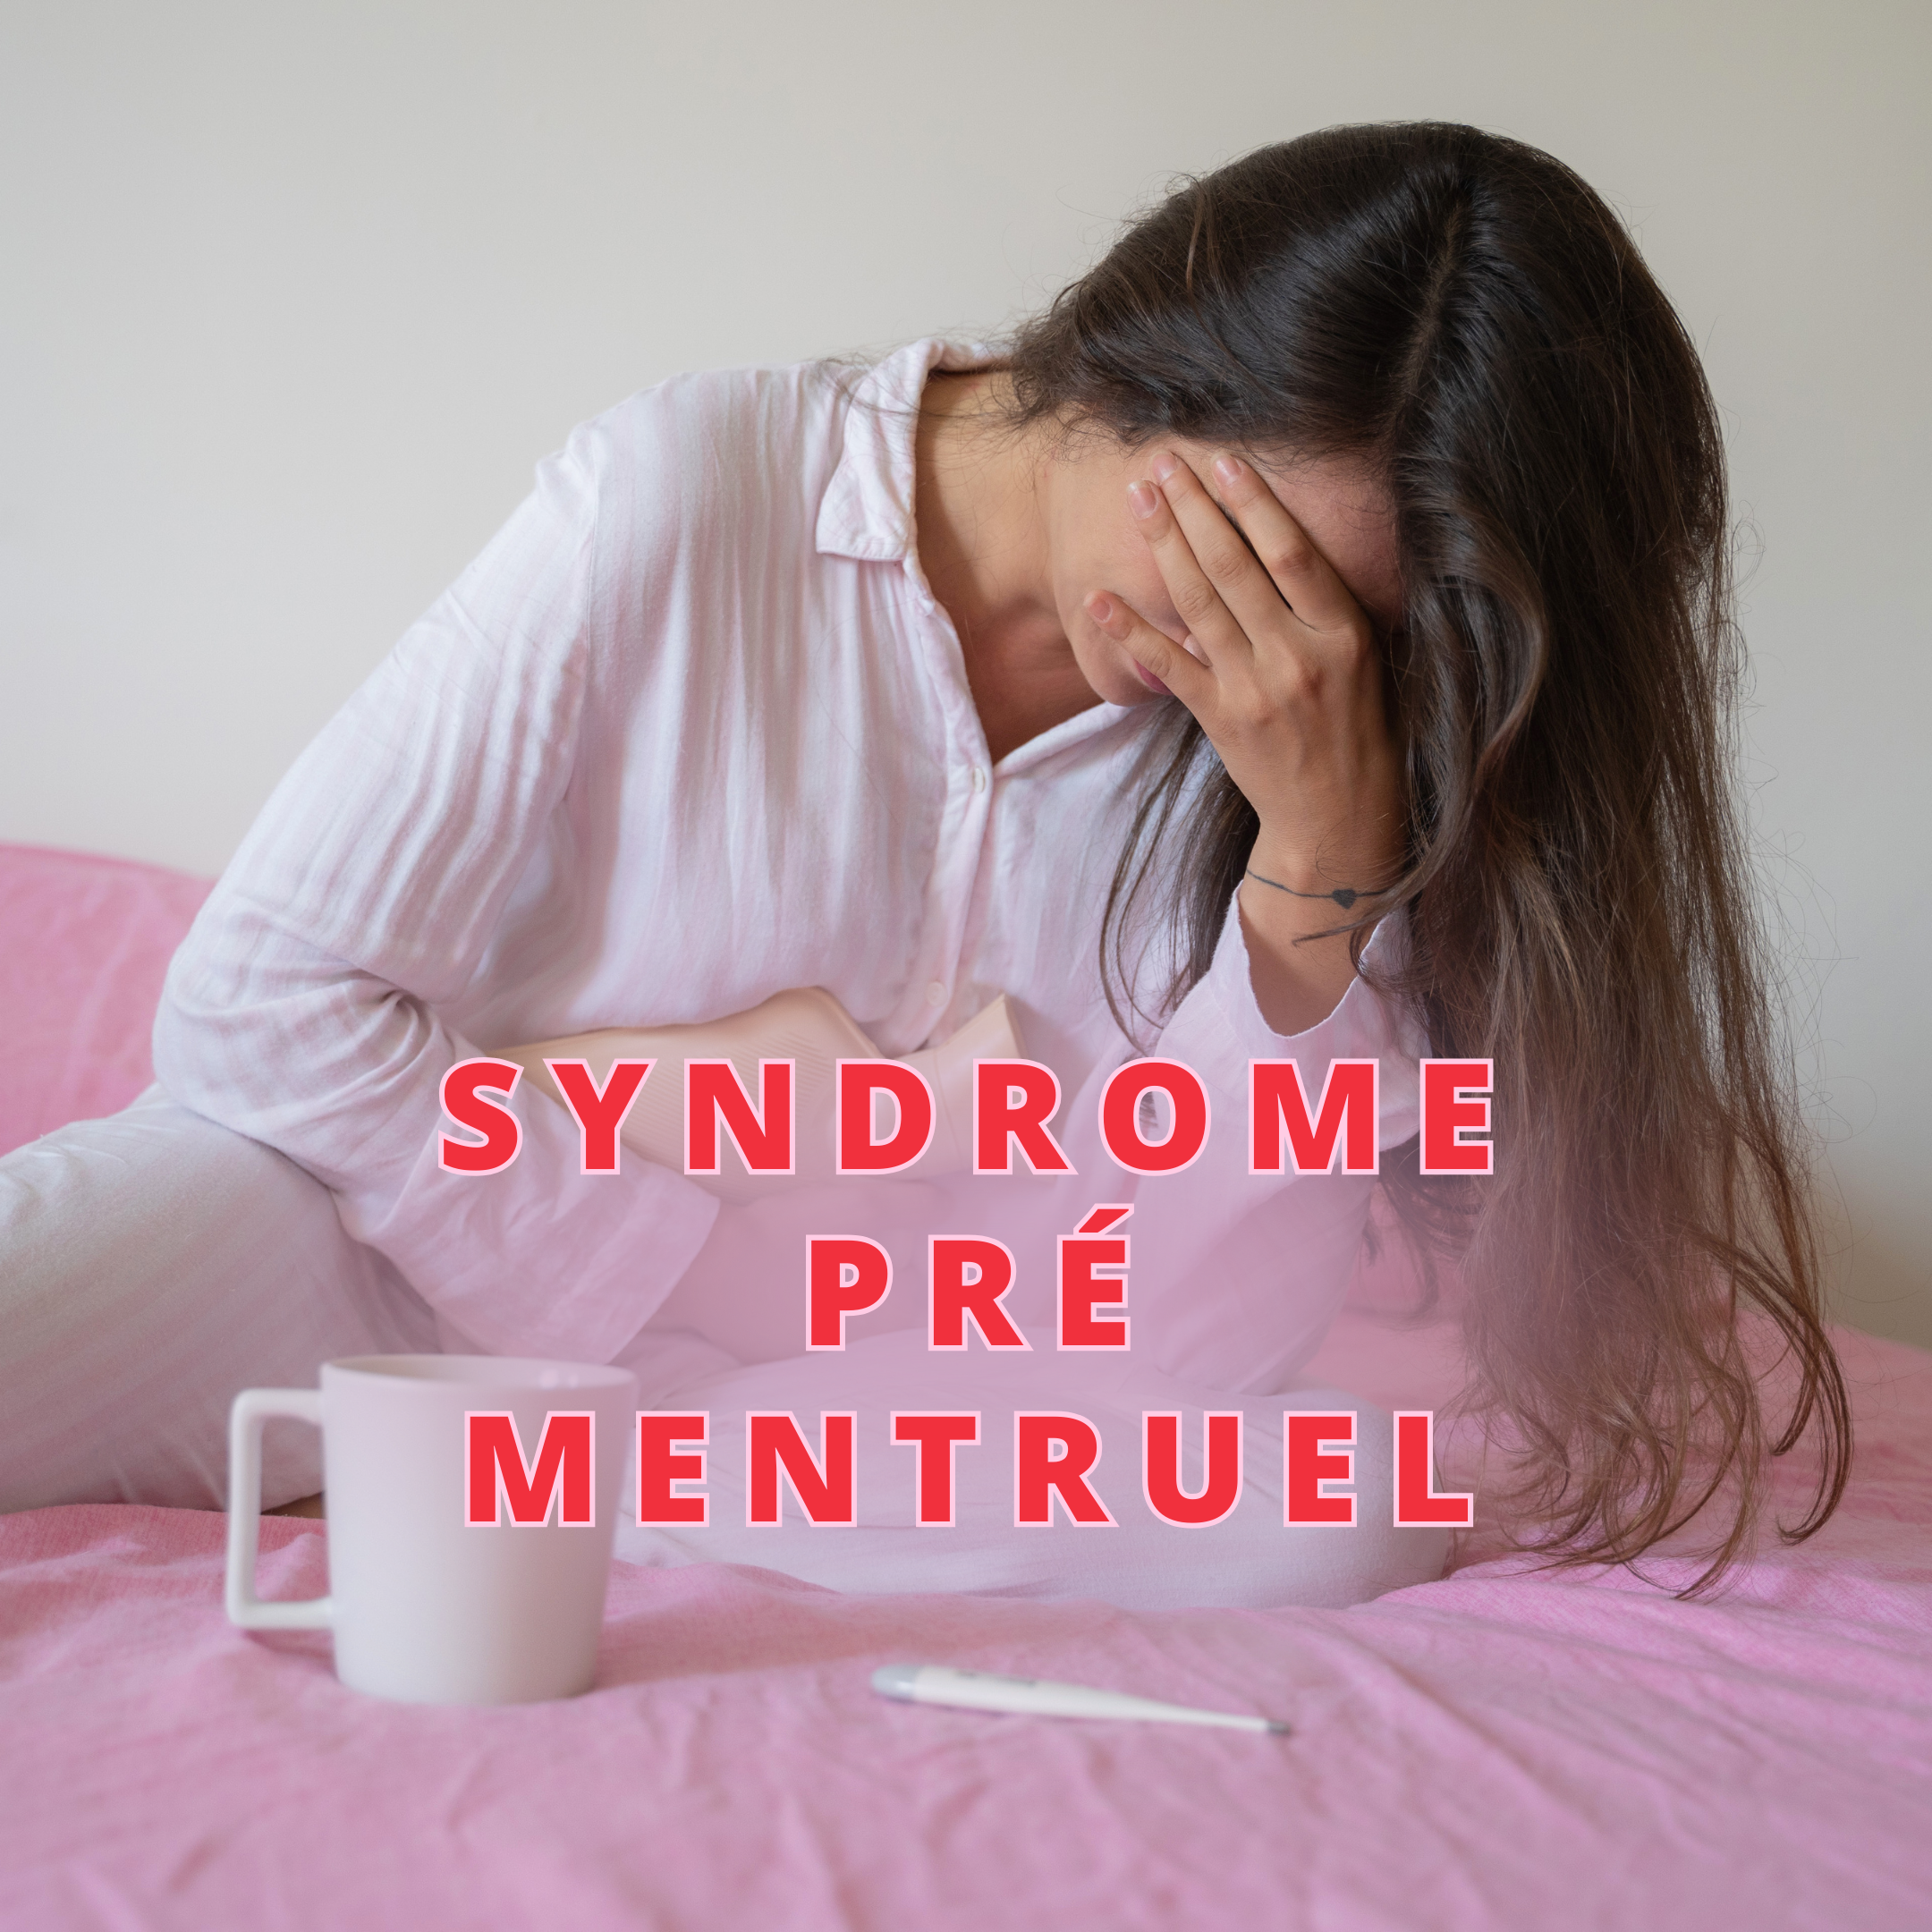 Apprenez tout sur le Syndrome Prémenstruel (SPM) : symptômes, gestion et différence avec le TDP. Apprenez à vivre sereinement malgré les changements hormonaux.